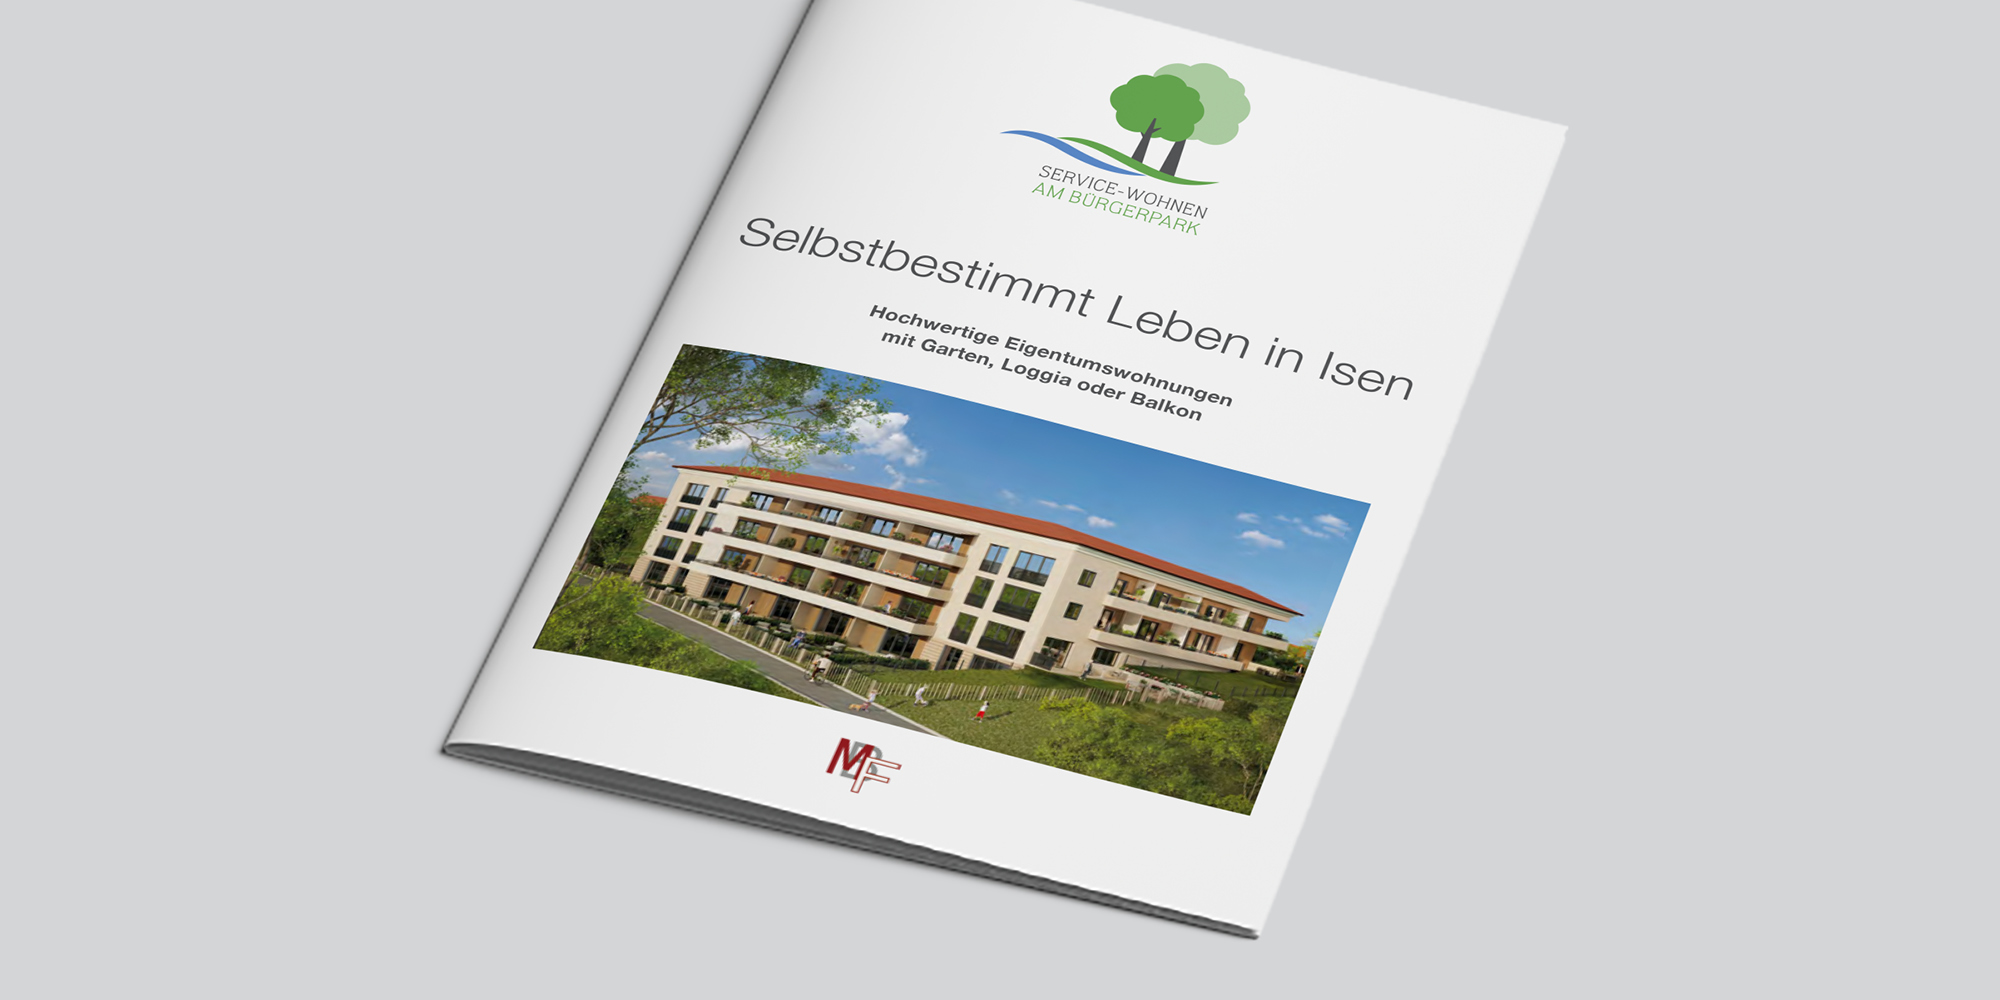 Master_Referenzen_MBF-Isen-I-GmbH_Webcase6